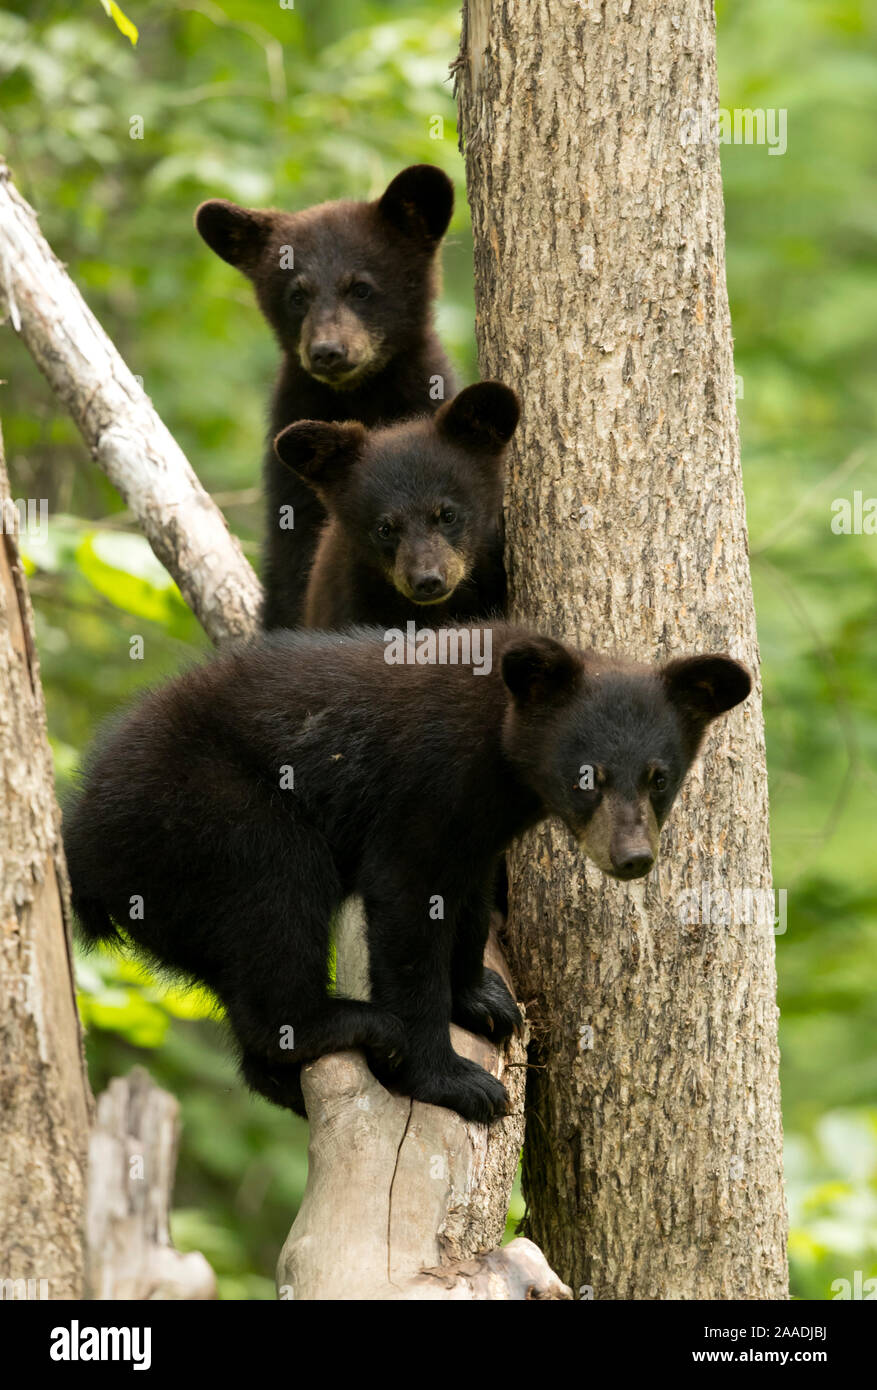 Black Bear cubs (Ursus americanus) in piedi in un albero, Minnesota, USA, Giugno. Foto Stock